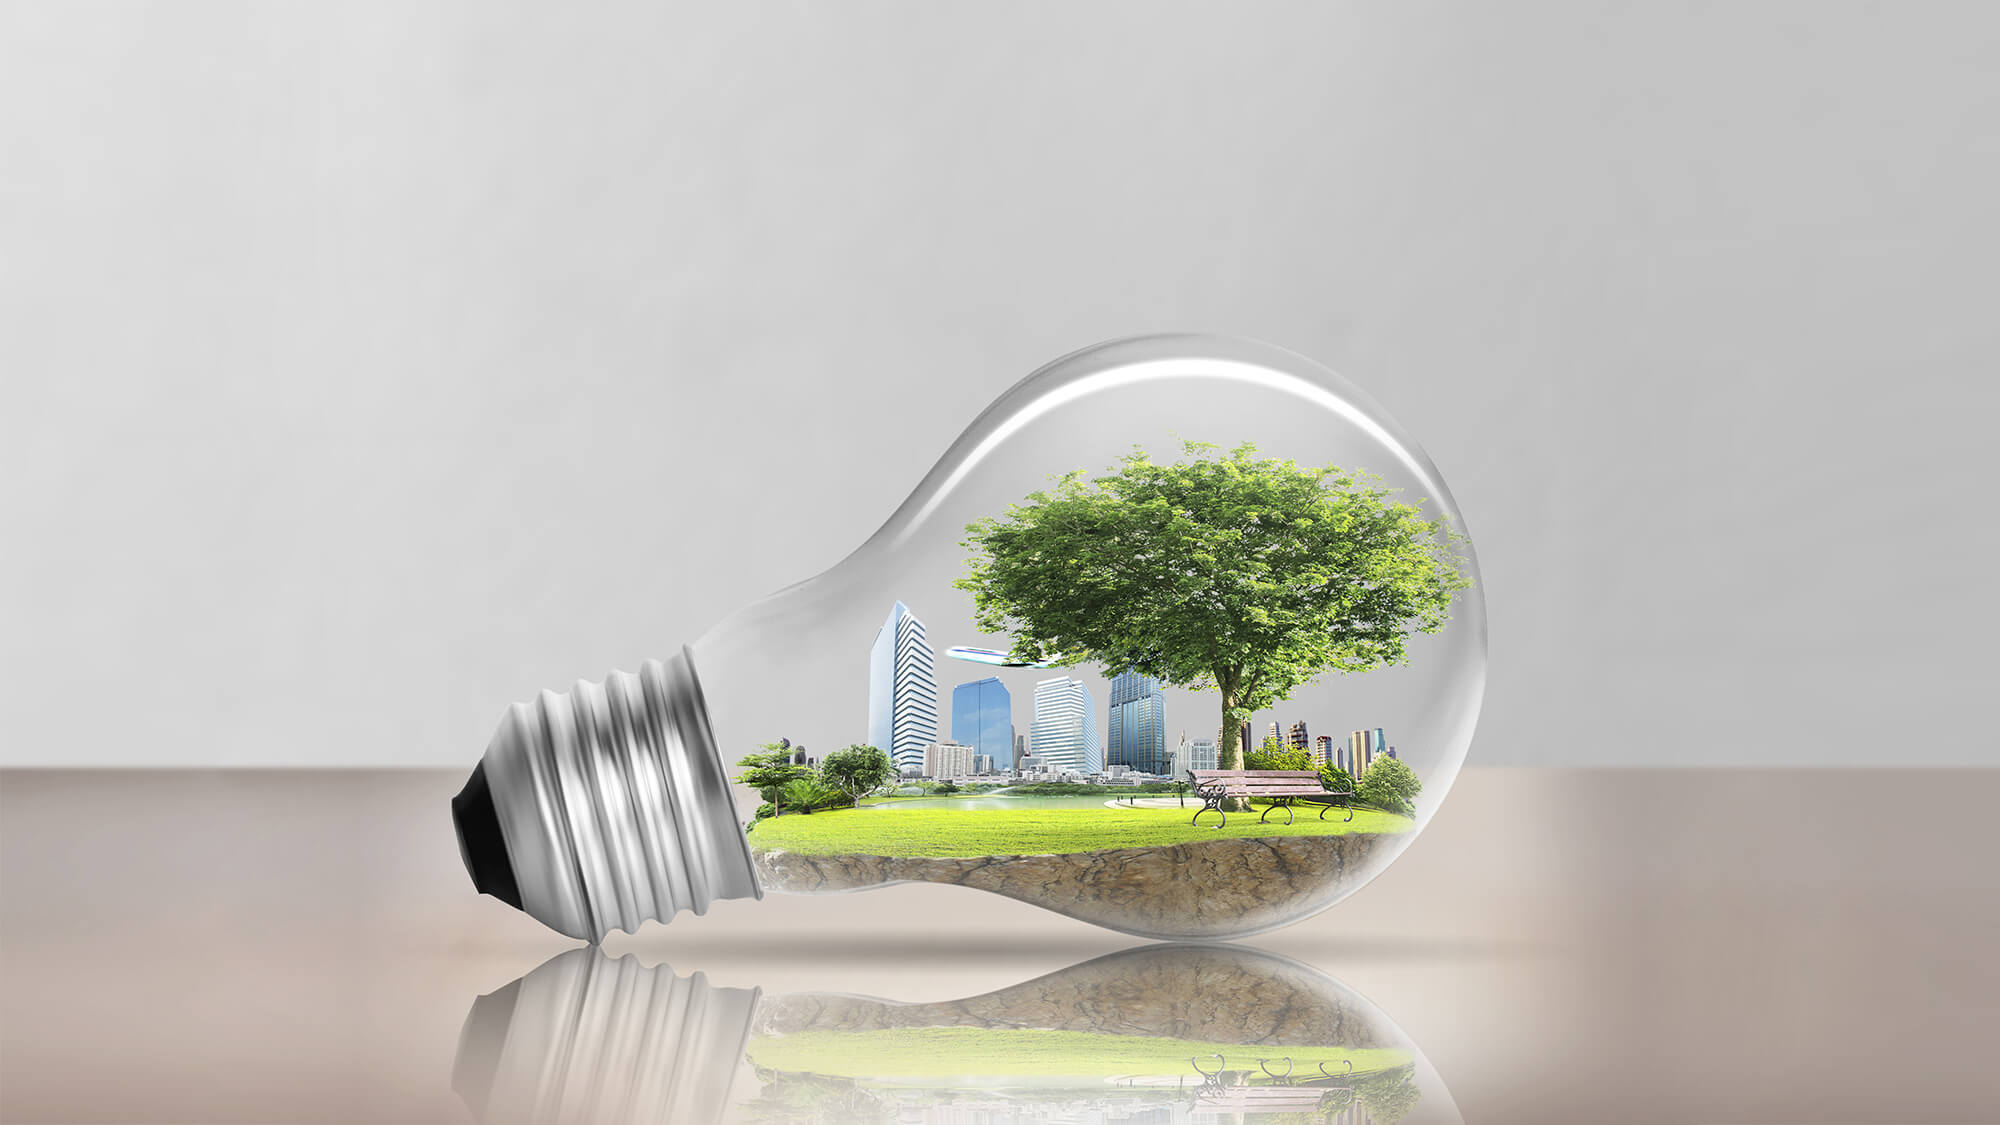 Featured image for “Il Biogas, una risorsa da sviluppare per allentare la dipendenza energetica del nostro paese dall’estero”